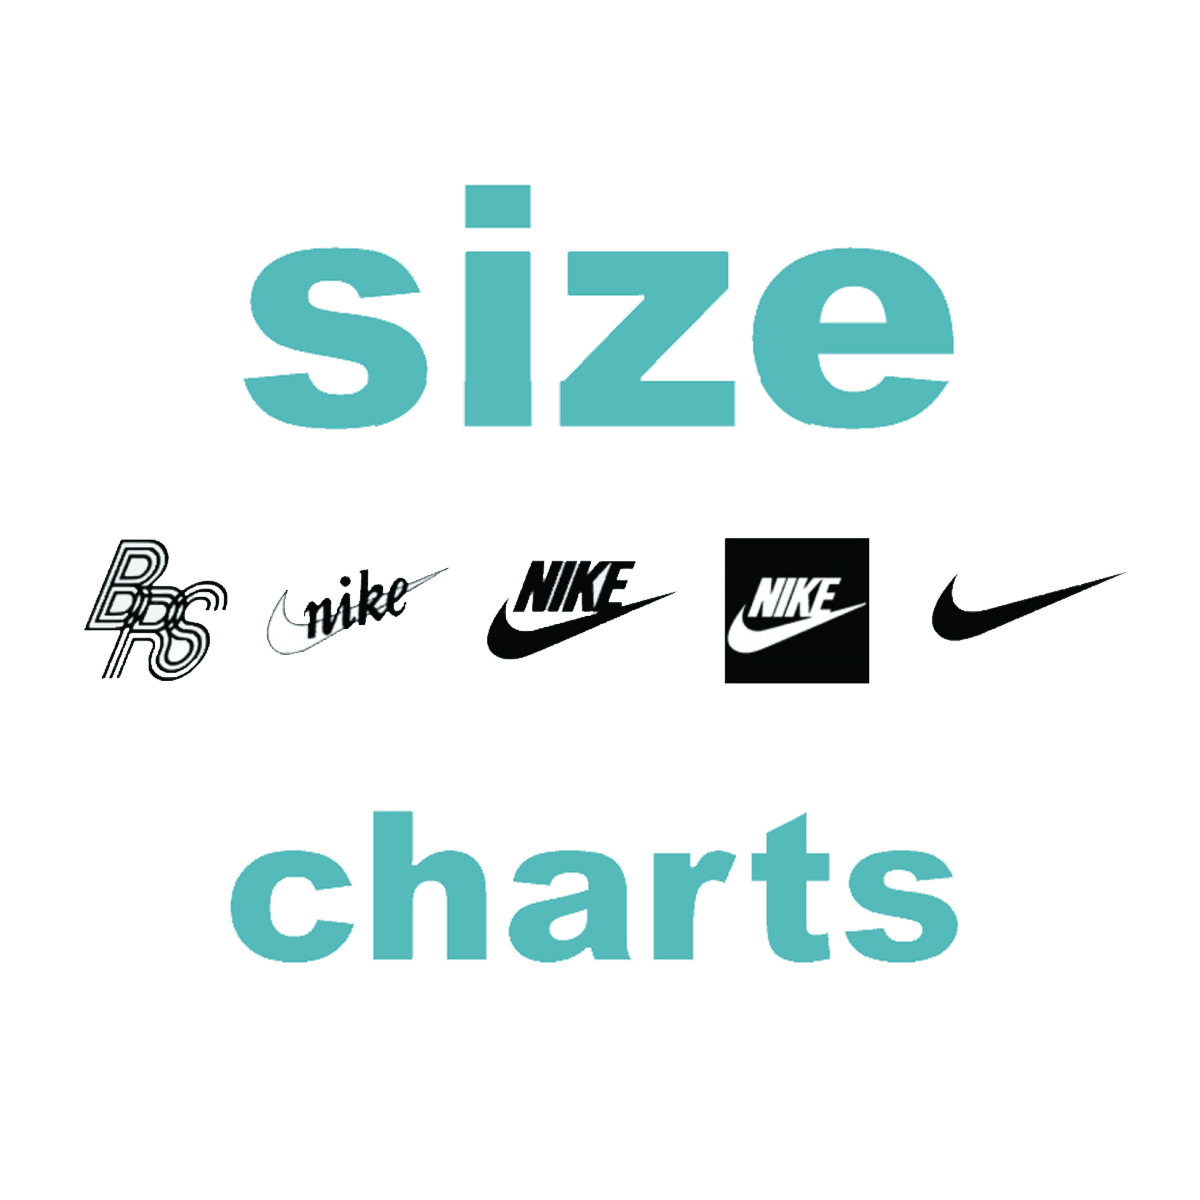 Besætte Glimte Colonial Nike Shoes Size Conversion Charts - Size-Charts.com